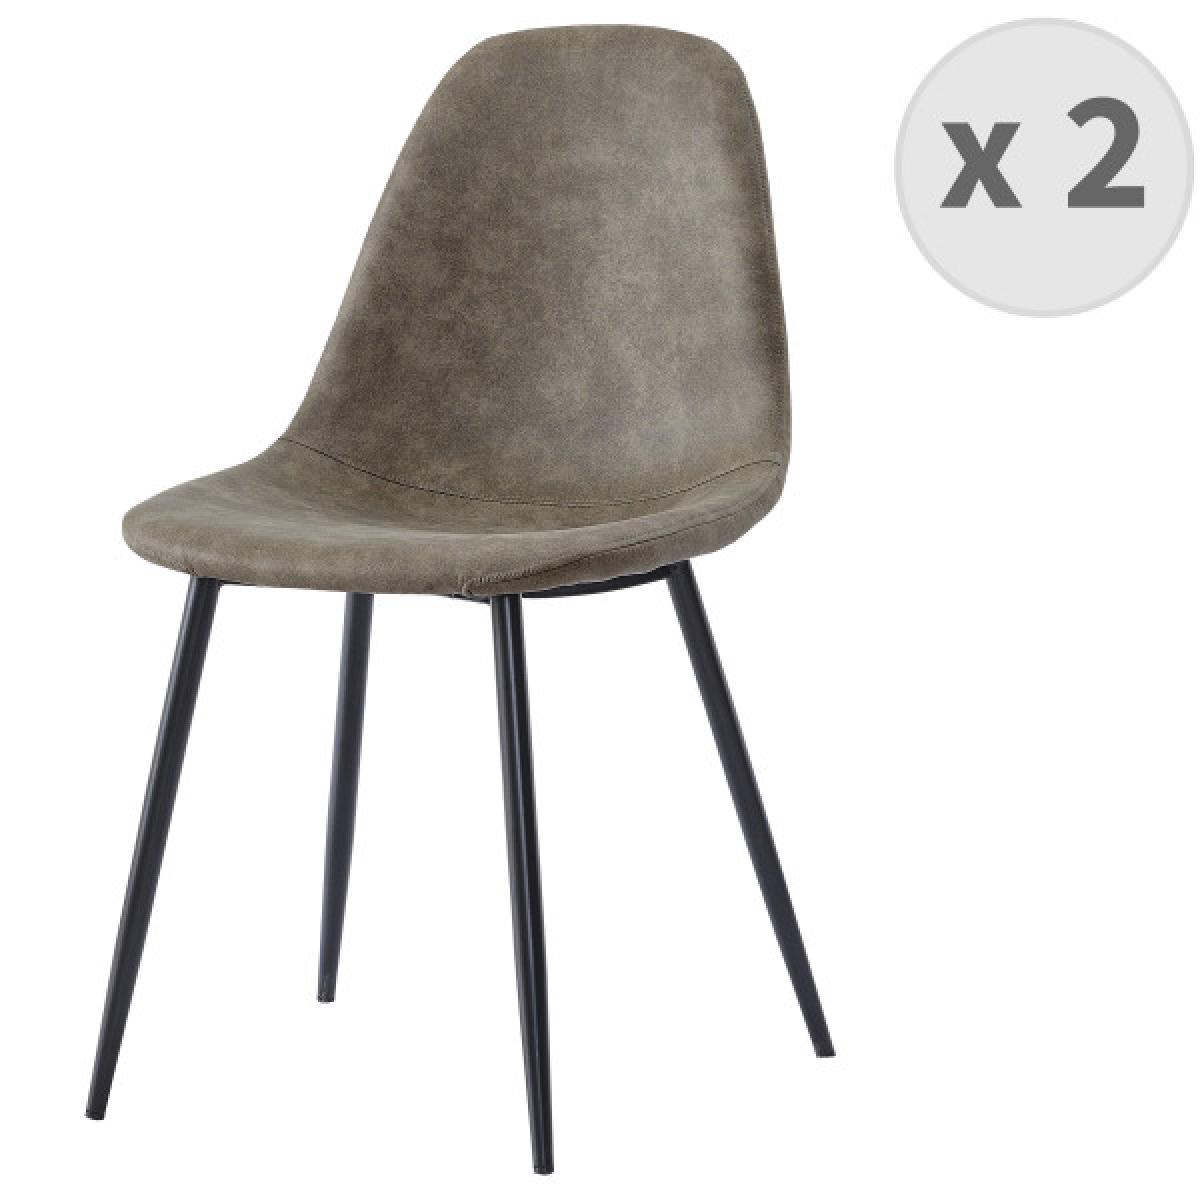 Moloo - ORLANDO - Chaise microfibre vintage brun clair pieds métal noir (x2) - Chaises